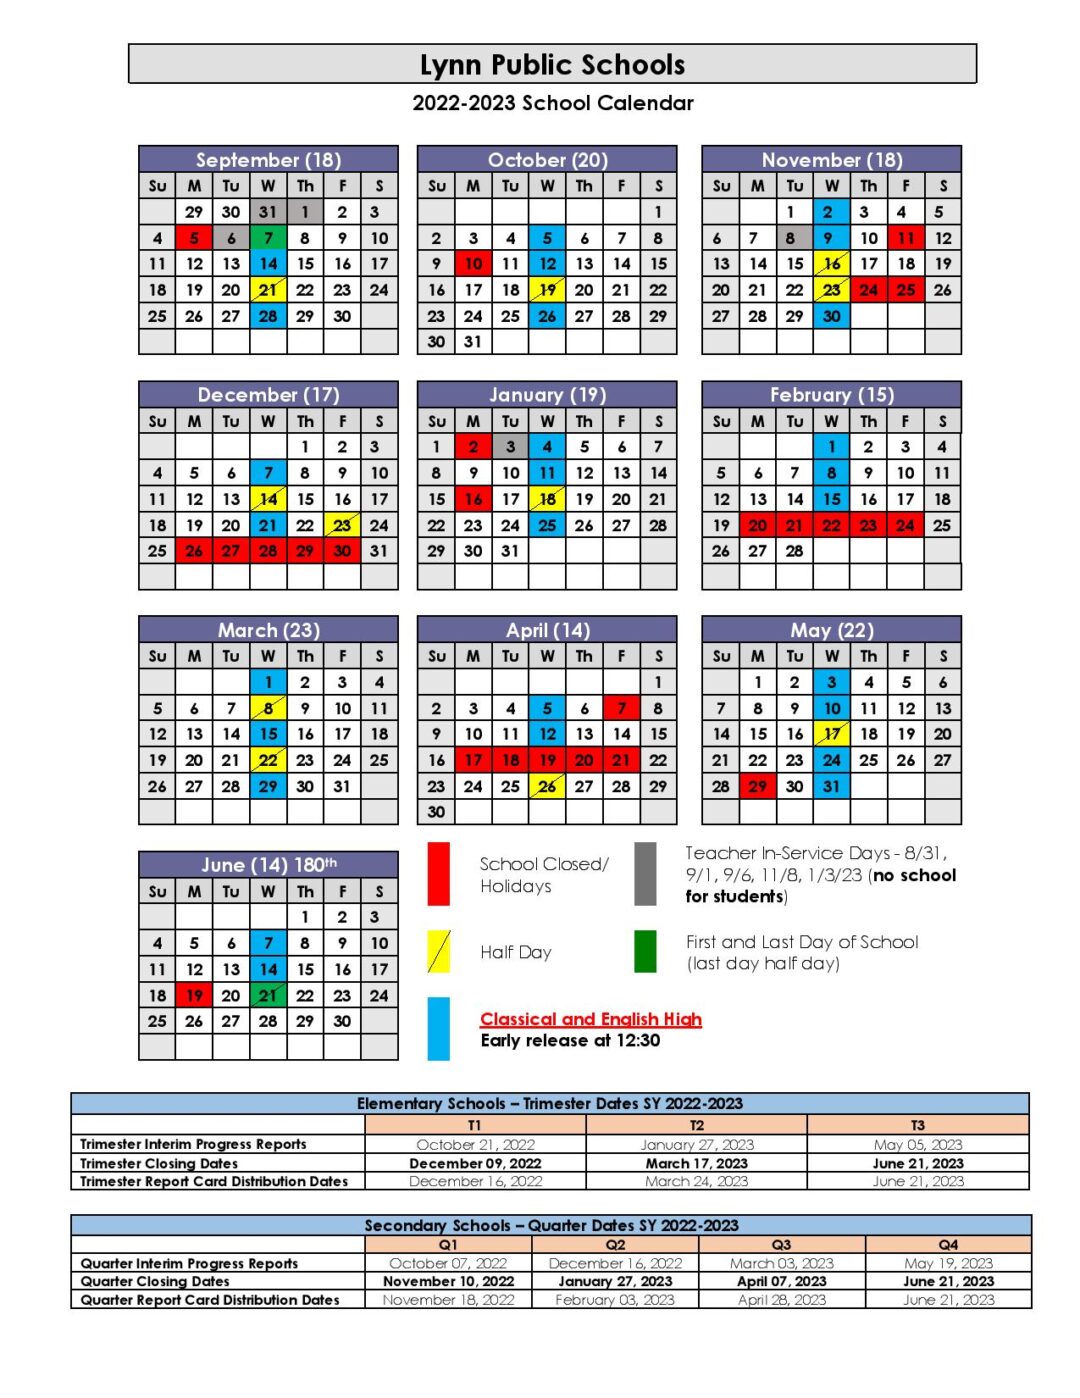 Lynn Public Schools Calendar 2022 2023 In PDF